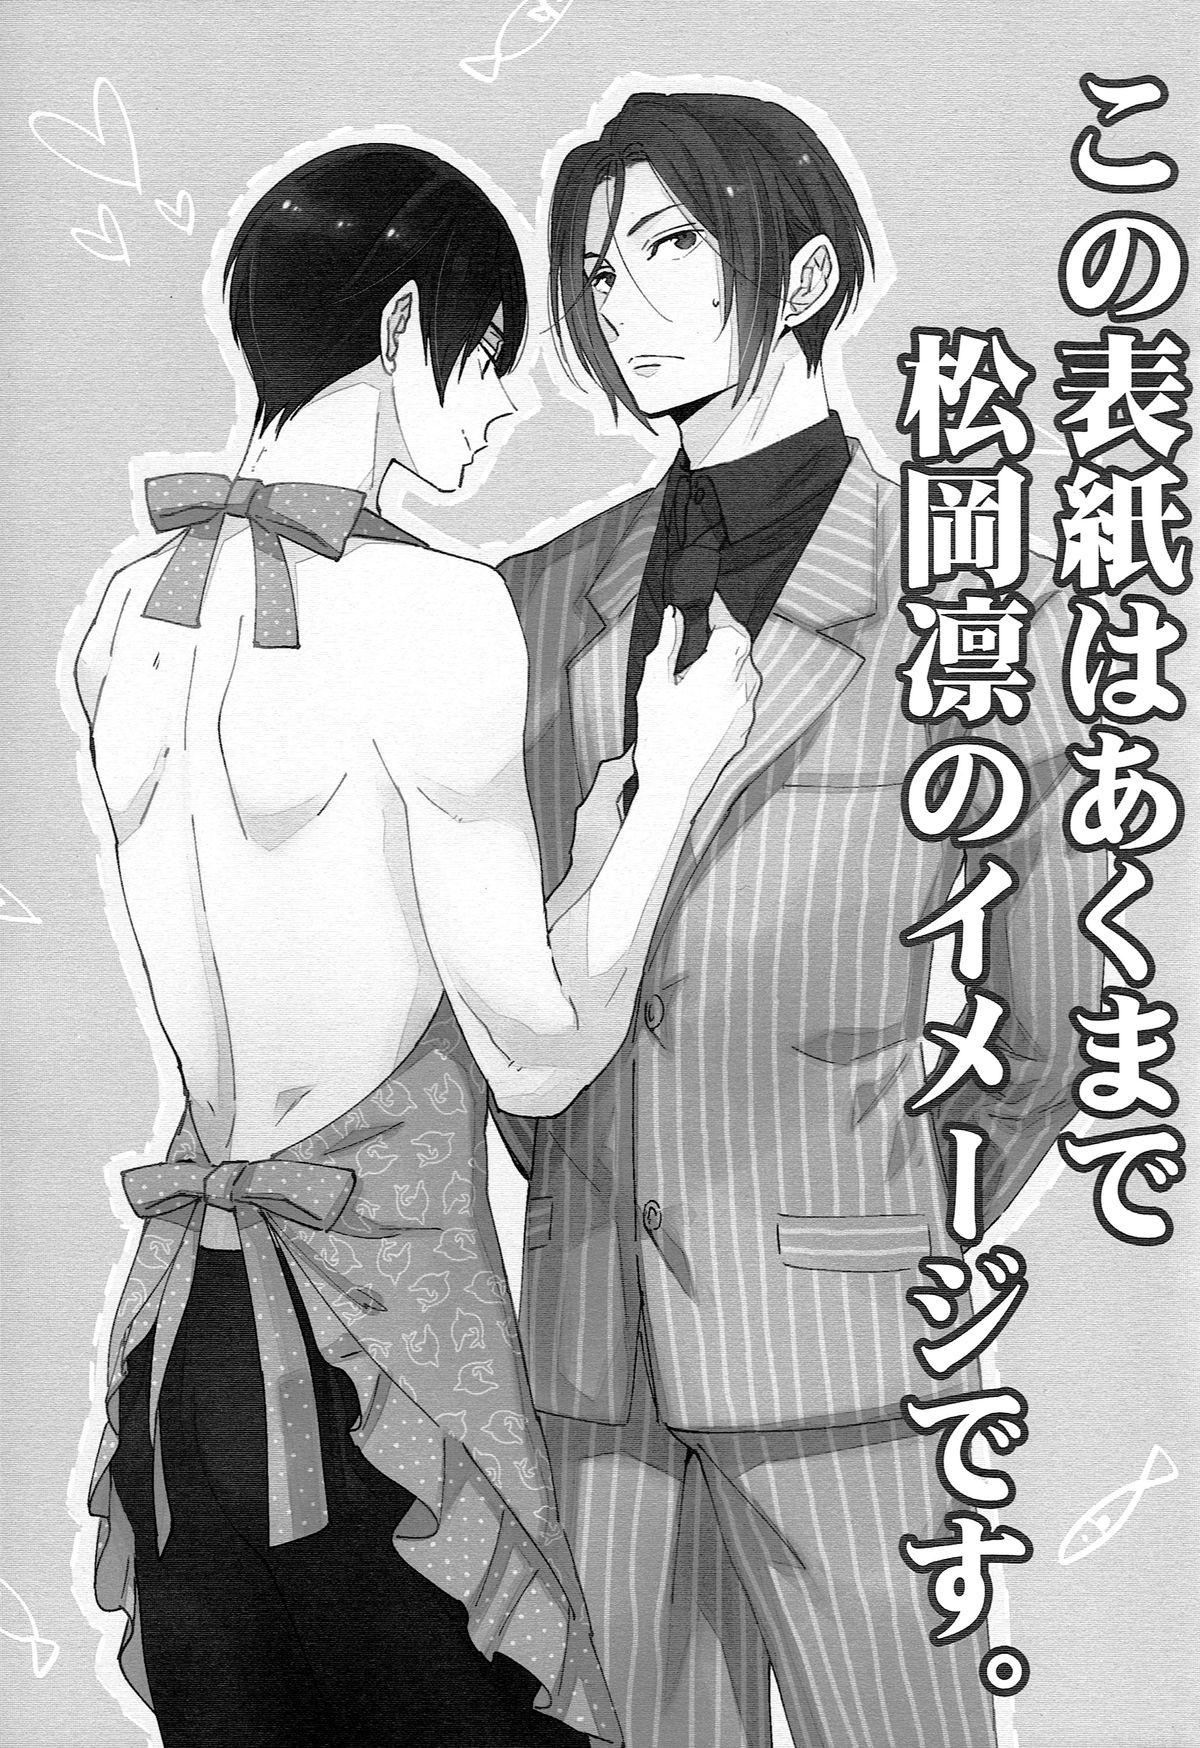 Gay Group Matsuoka Rin no Shinkon Seikatsu - Free Amiga - Page 2